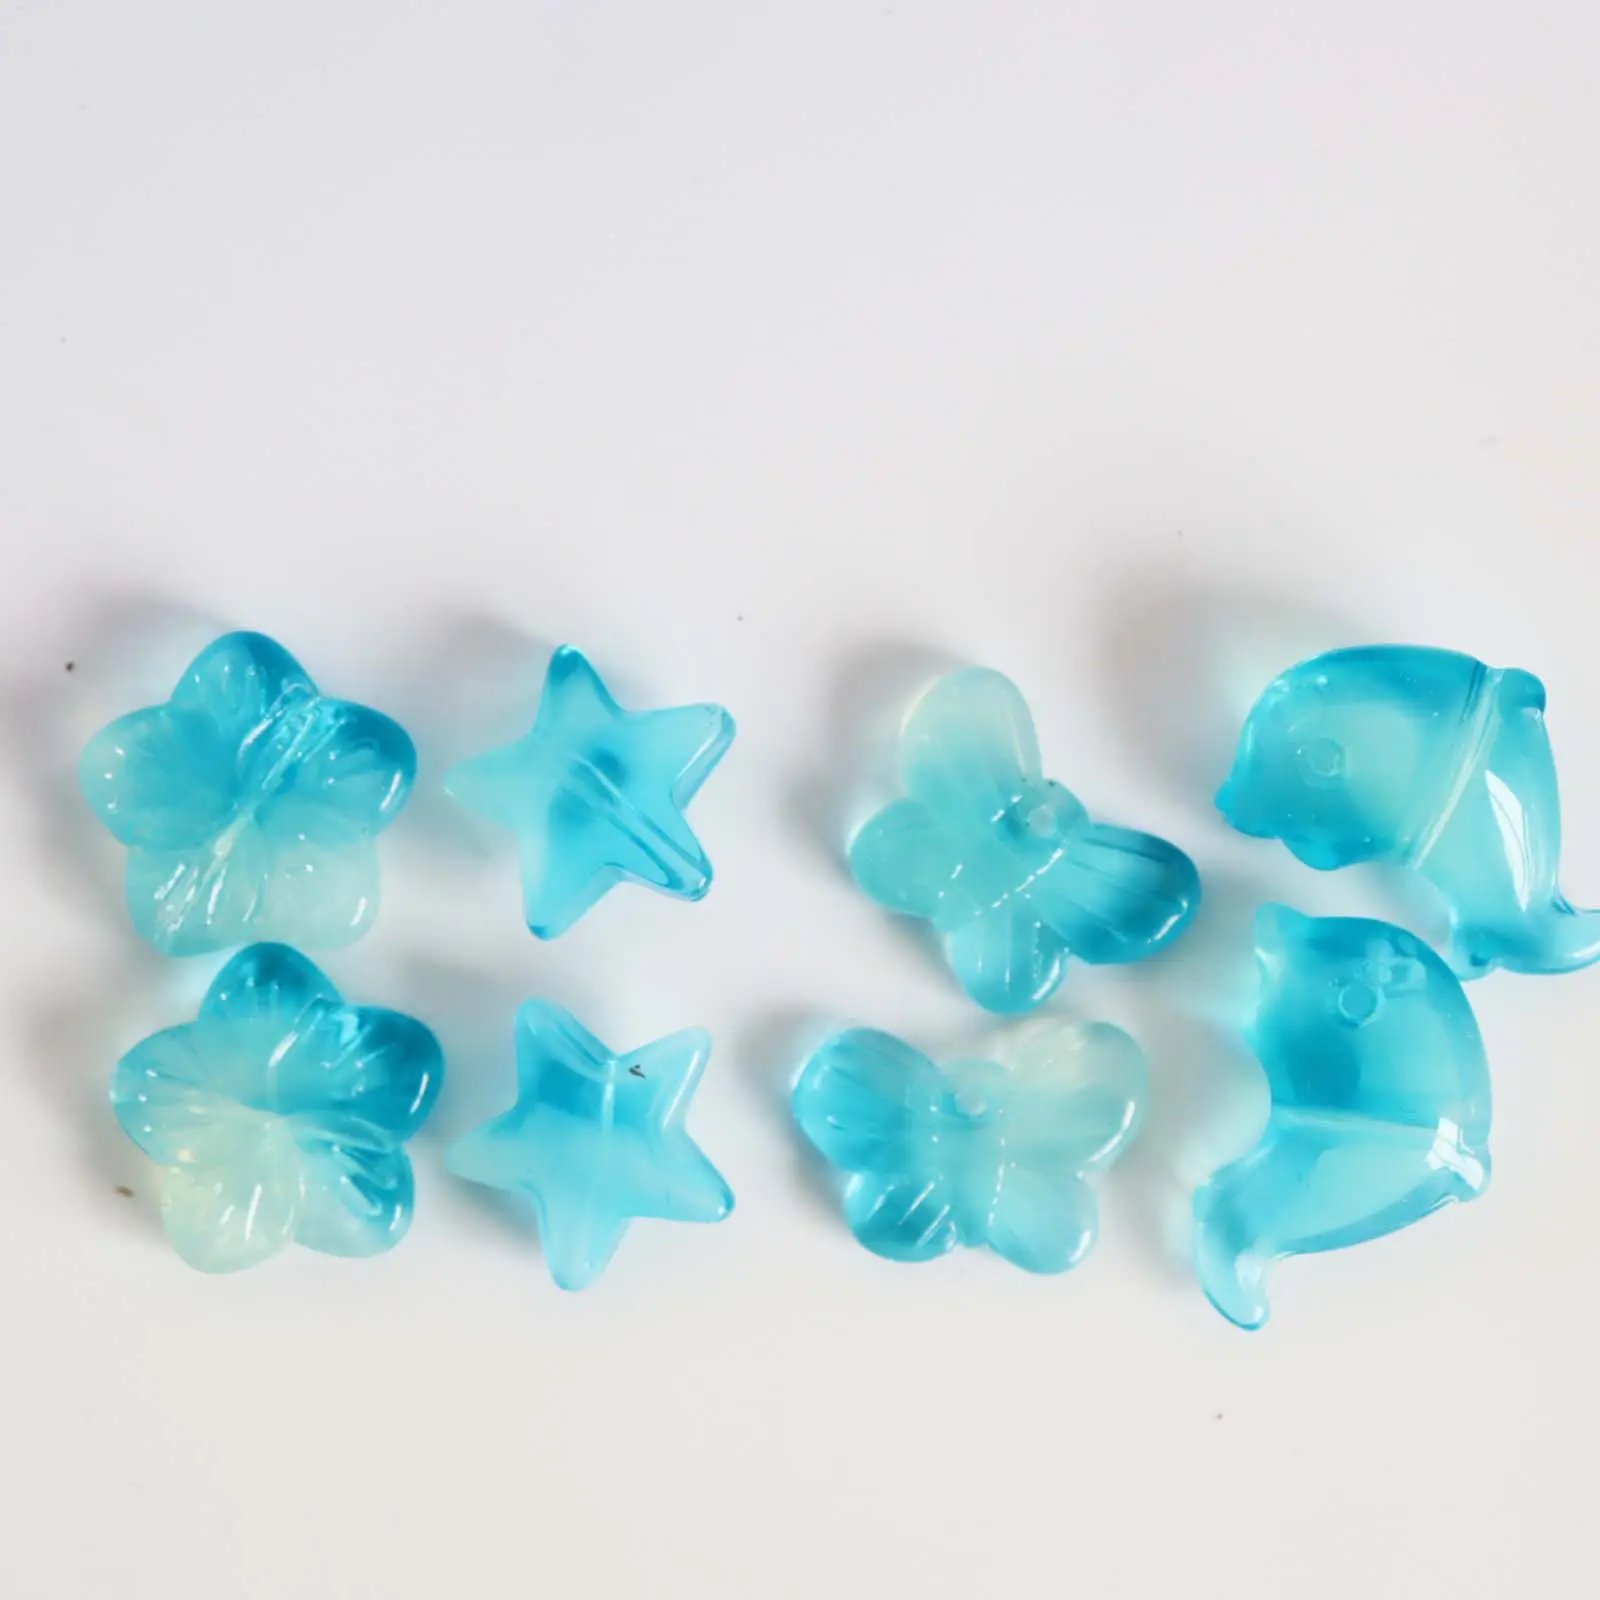 Stern Schmetterling Blume Delphin blau Glasperlen für Schmuck billige Mix Perlen Kit